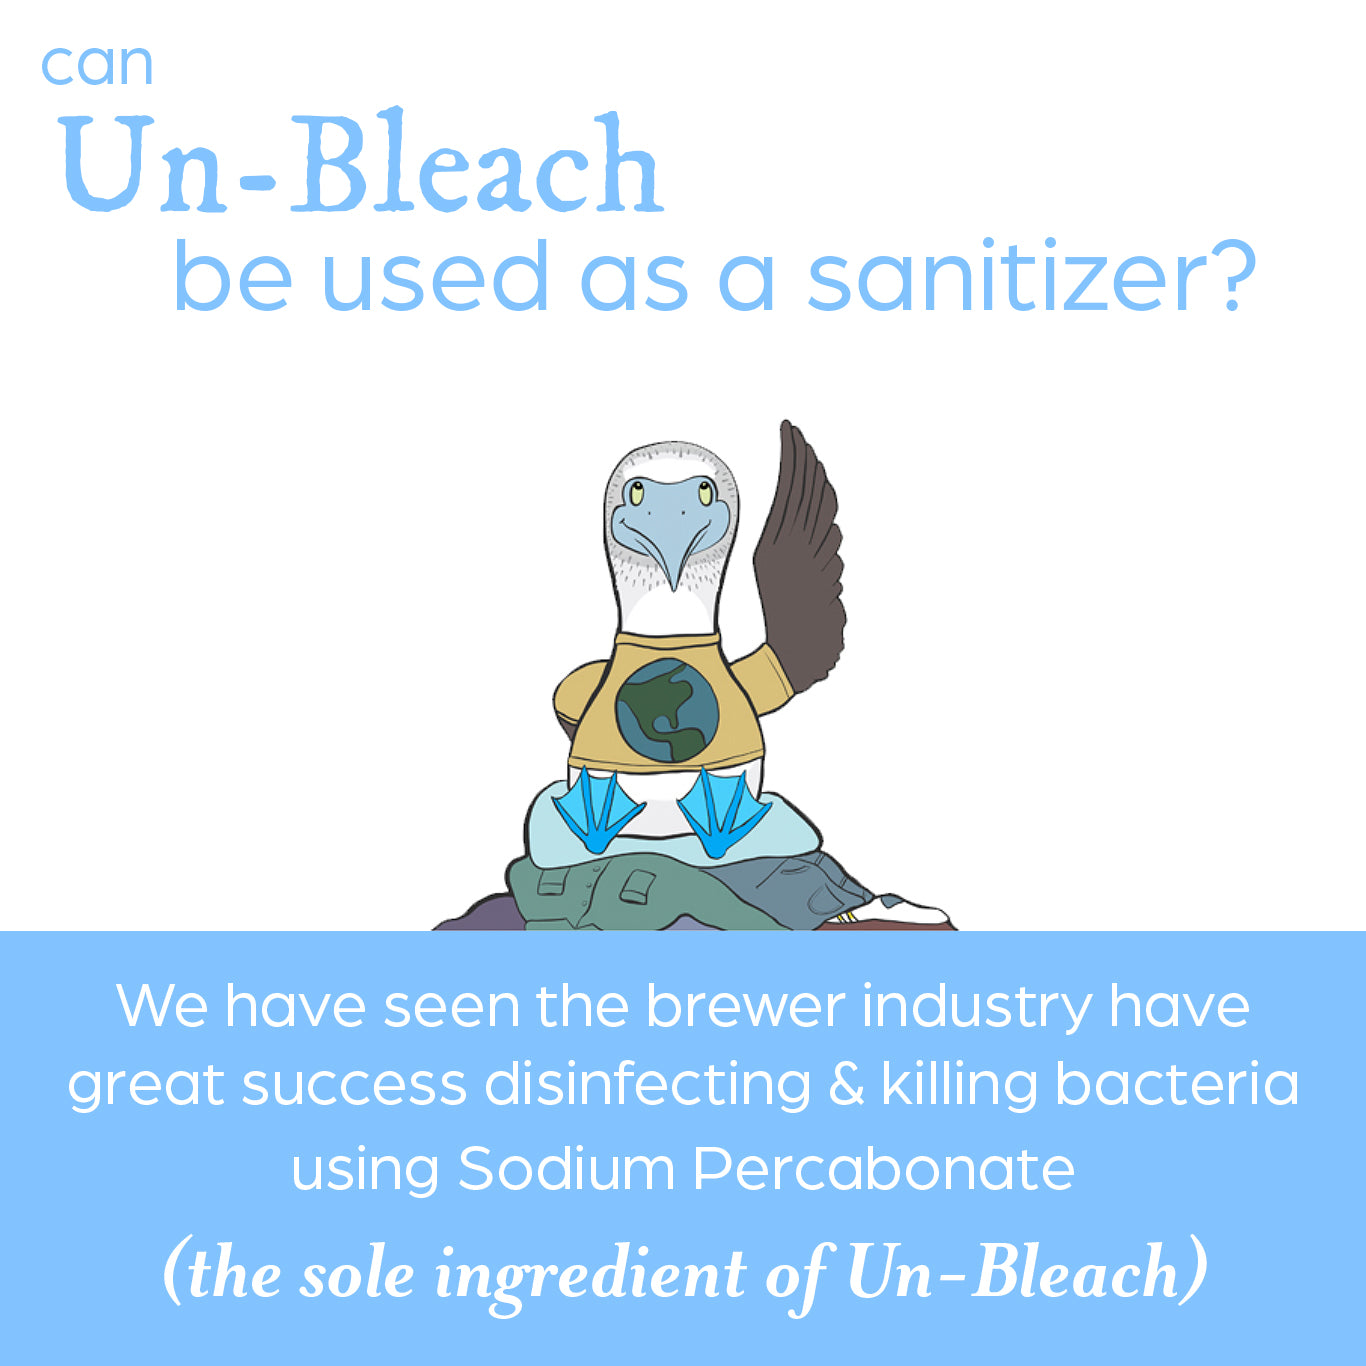 Un-Bleach | 16 Pack - 2 lb Bags